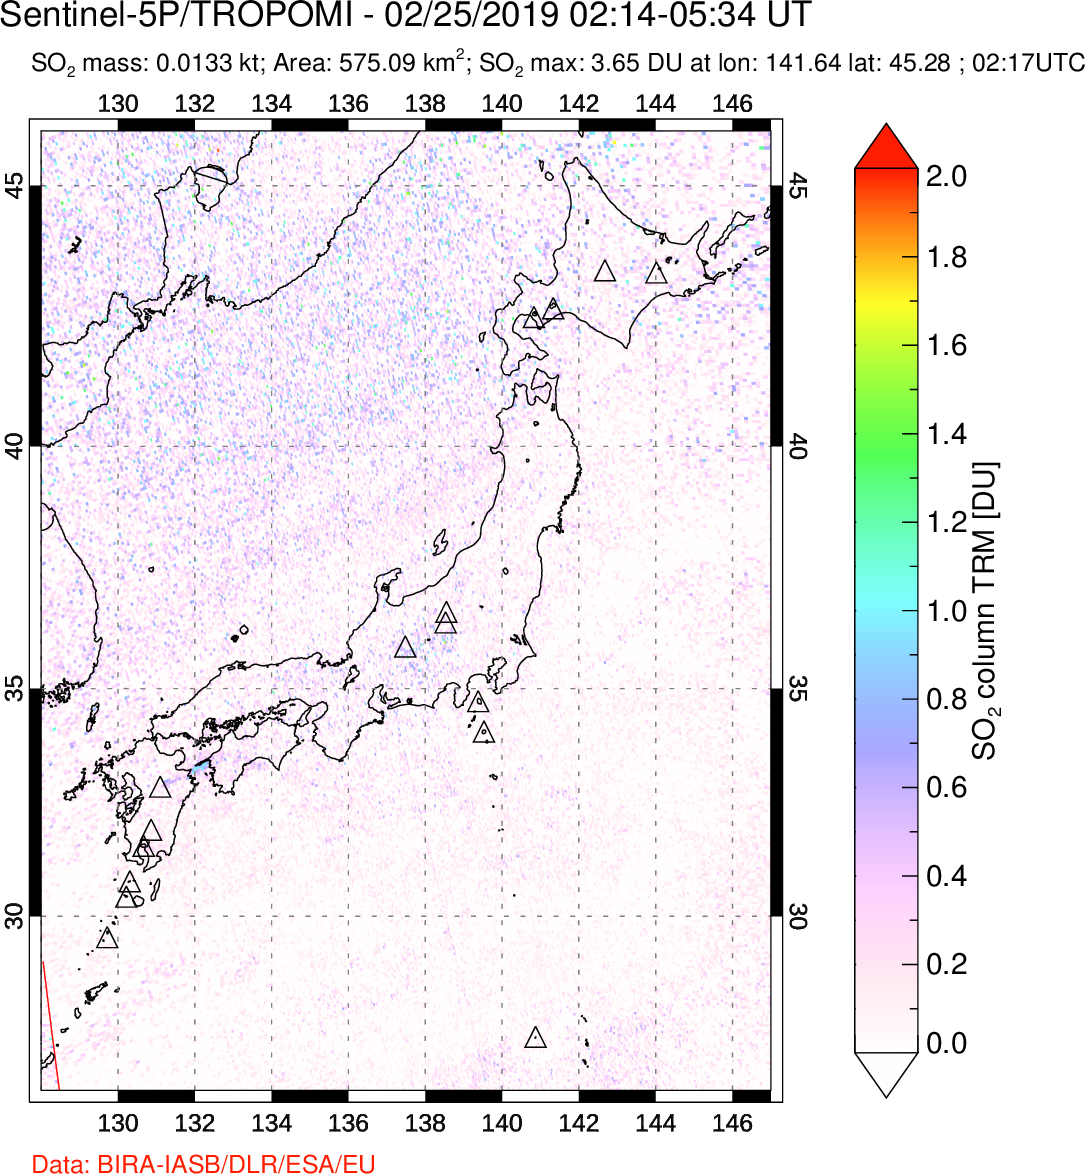 A sulfur dioxide image over Japan on Feb 25, 2019.